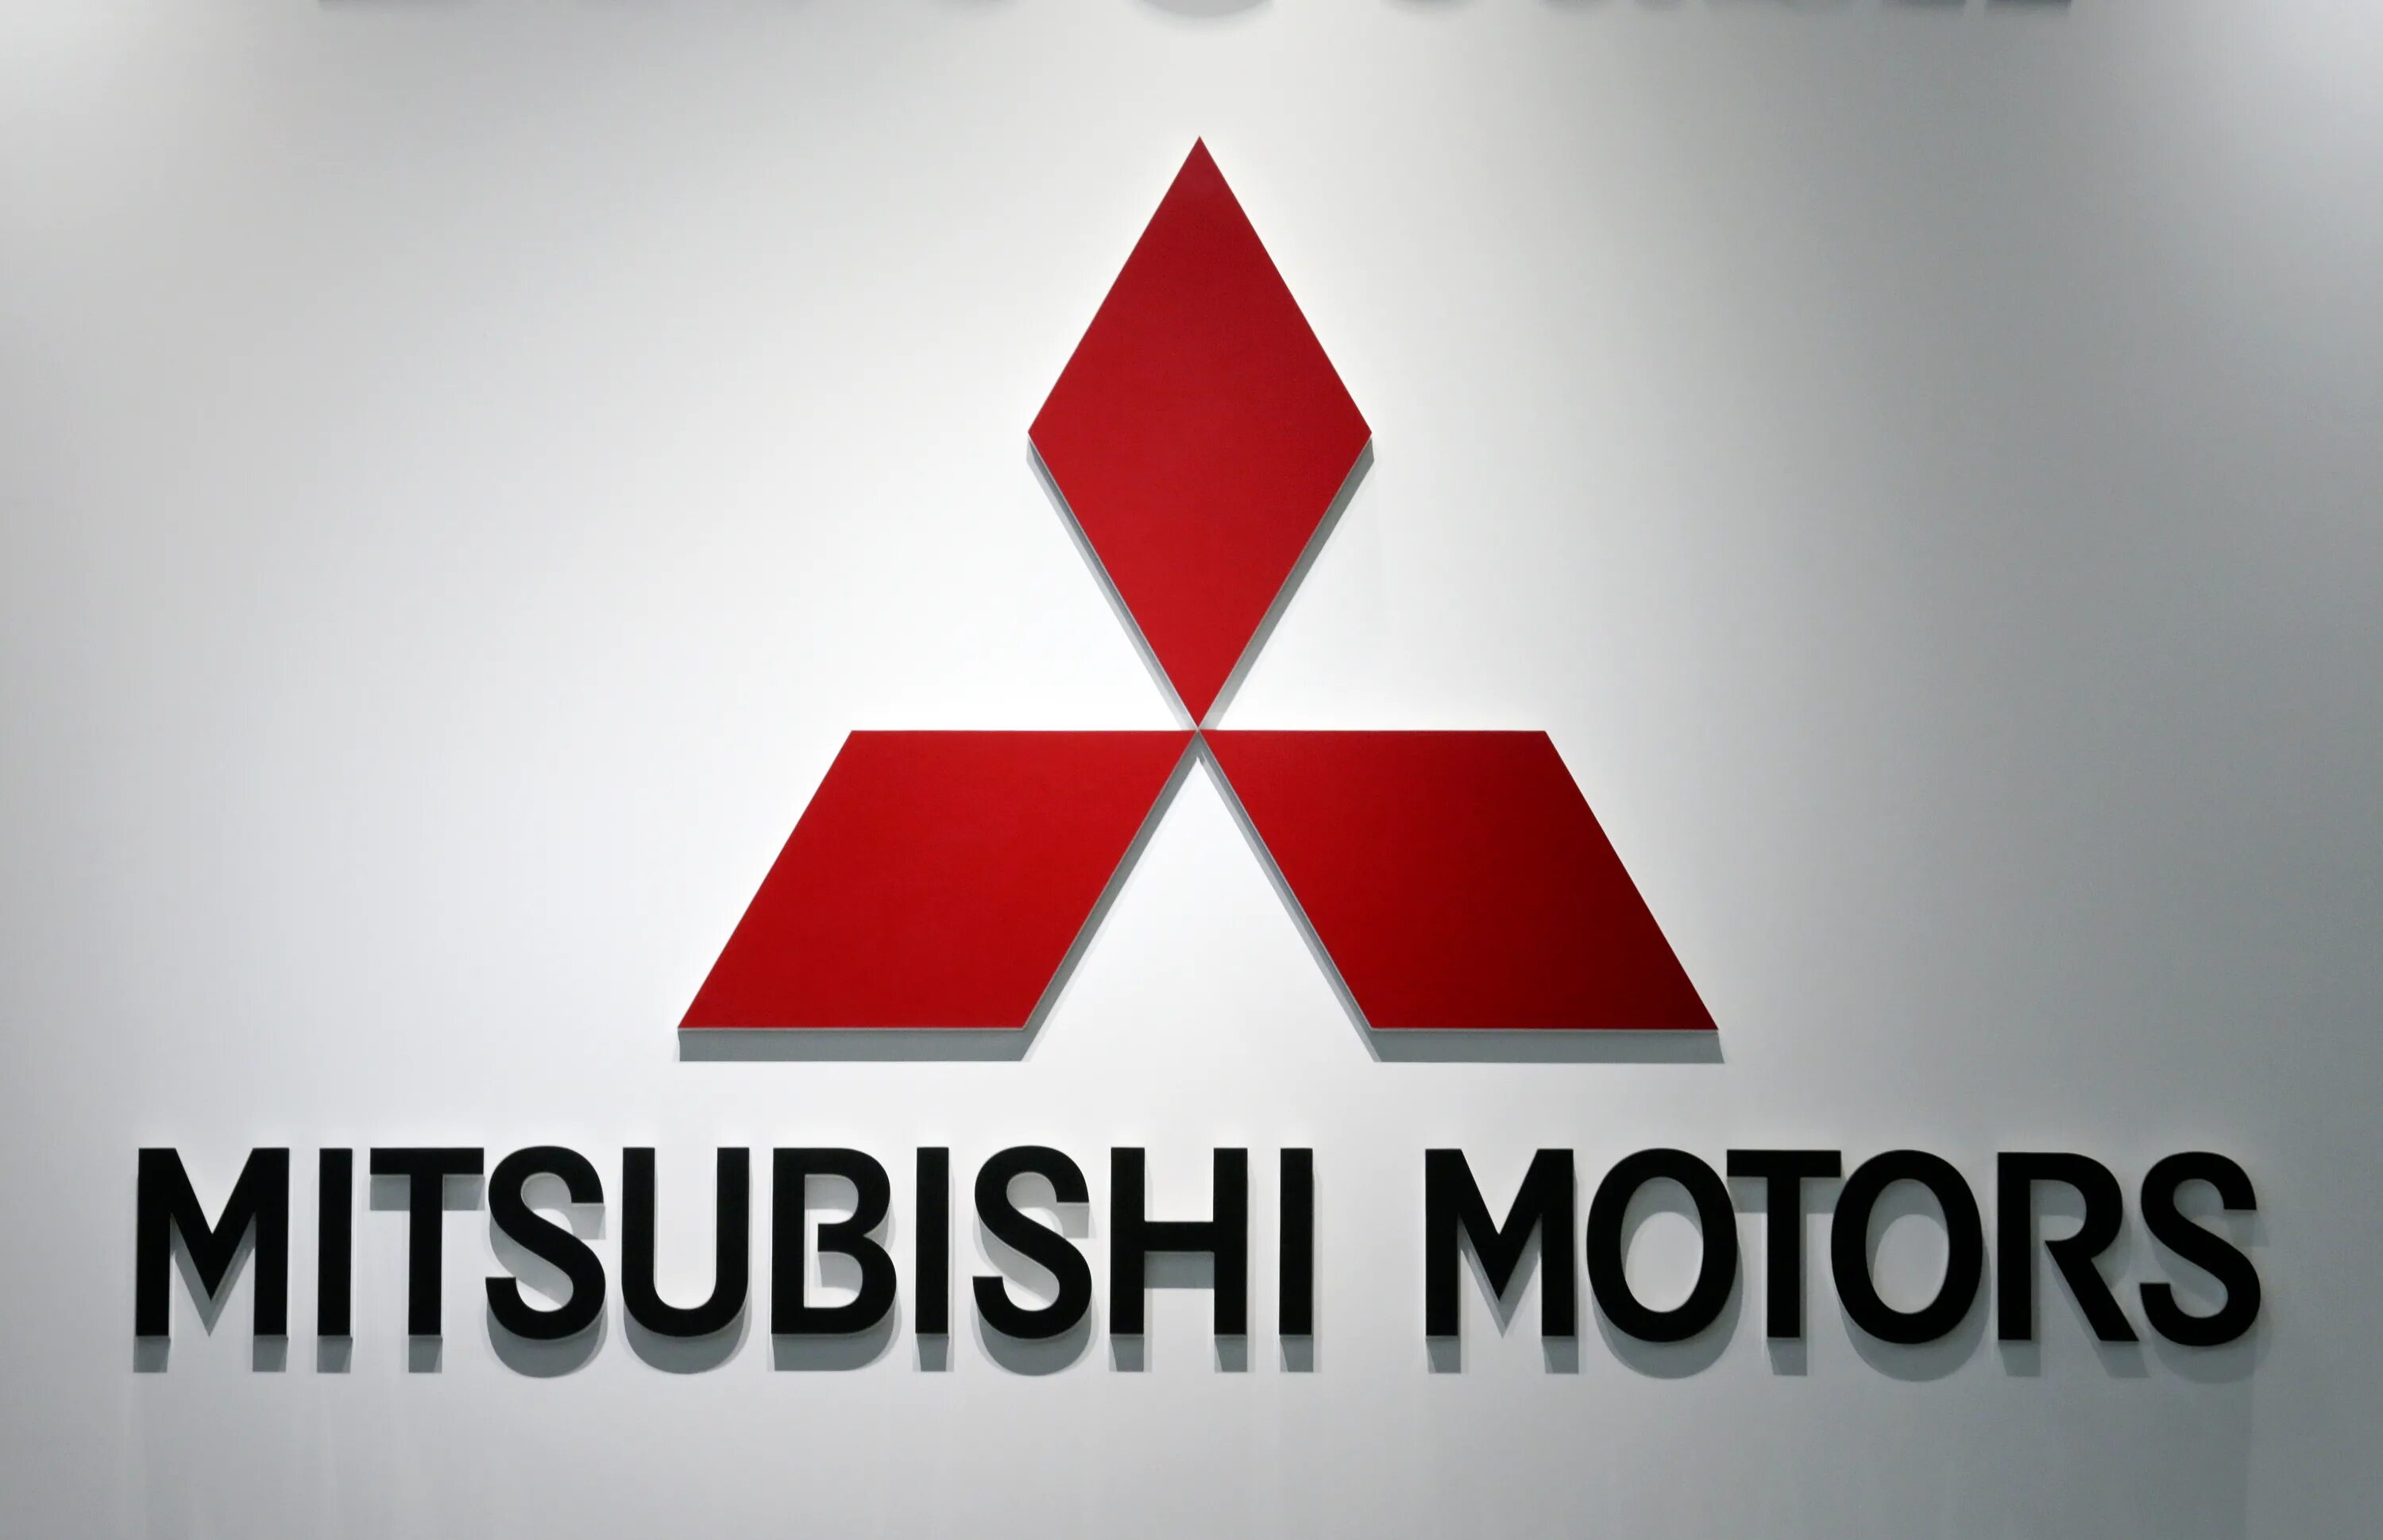 Mitsubishi название. Mitsubishi logo 2021. Mitsubishi значок Mitsubishi. Mitsubishi Motors Corporation logo. Mitsubishi Group автомобили Mitsubishi 2010 года.